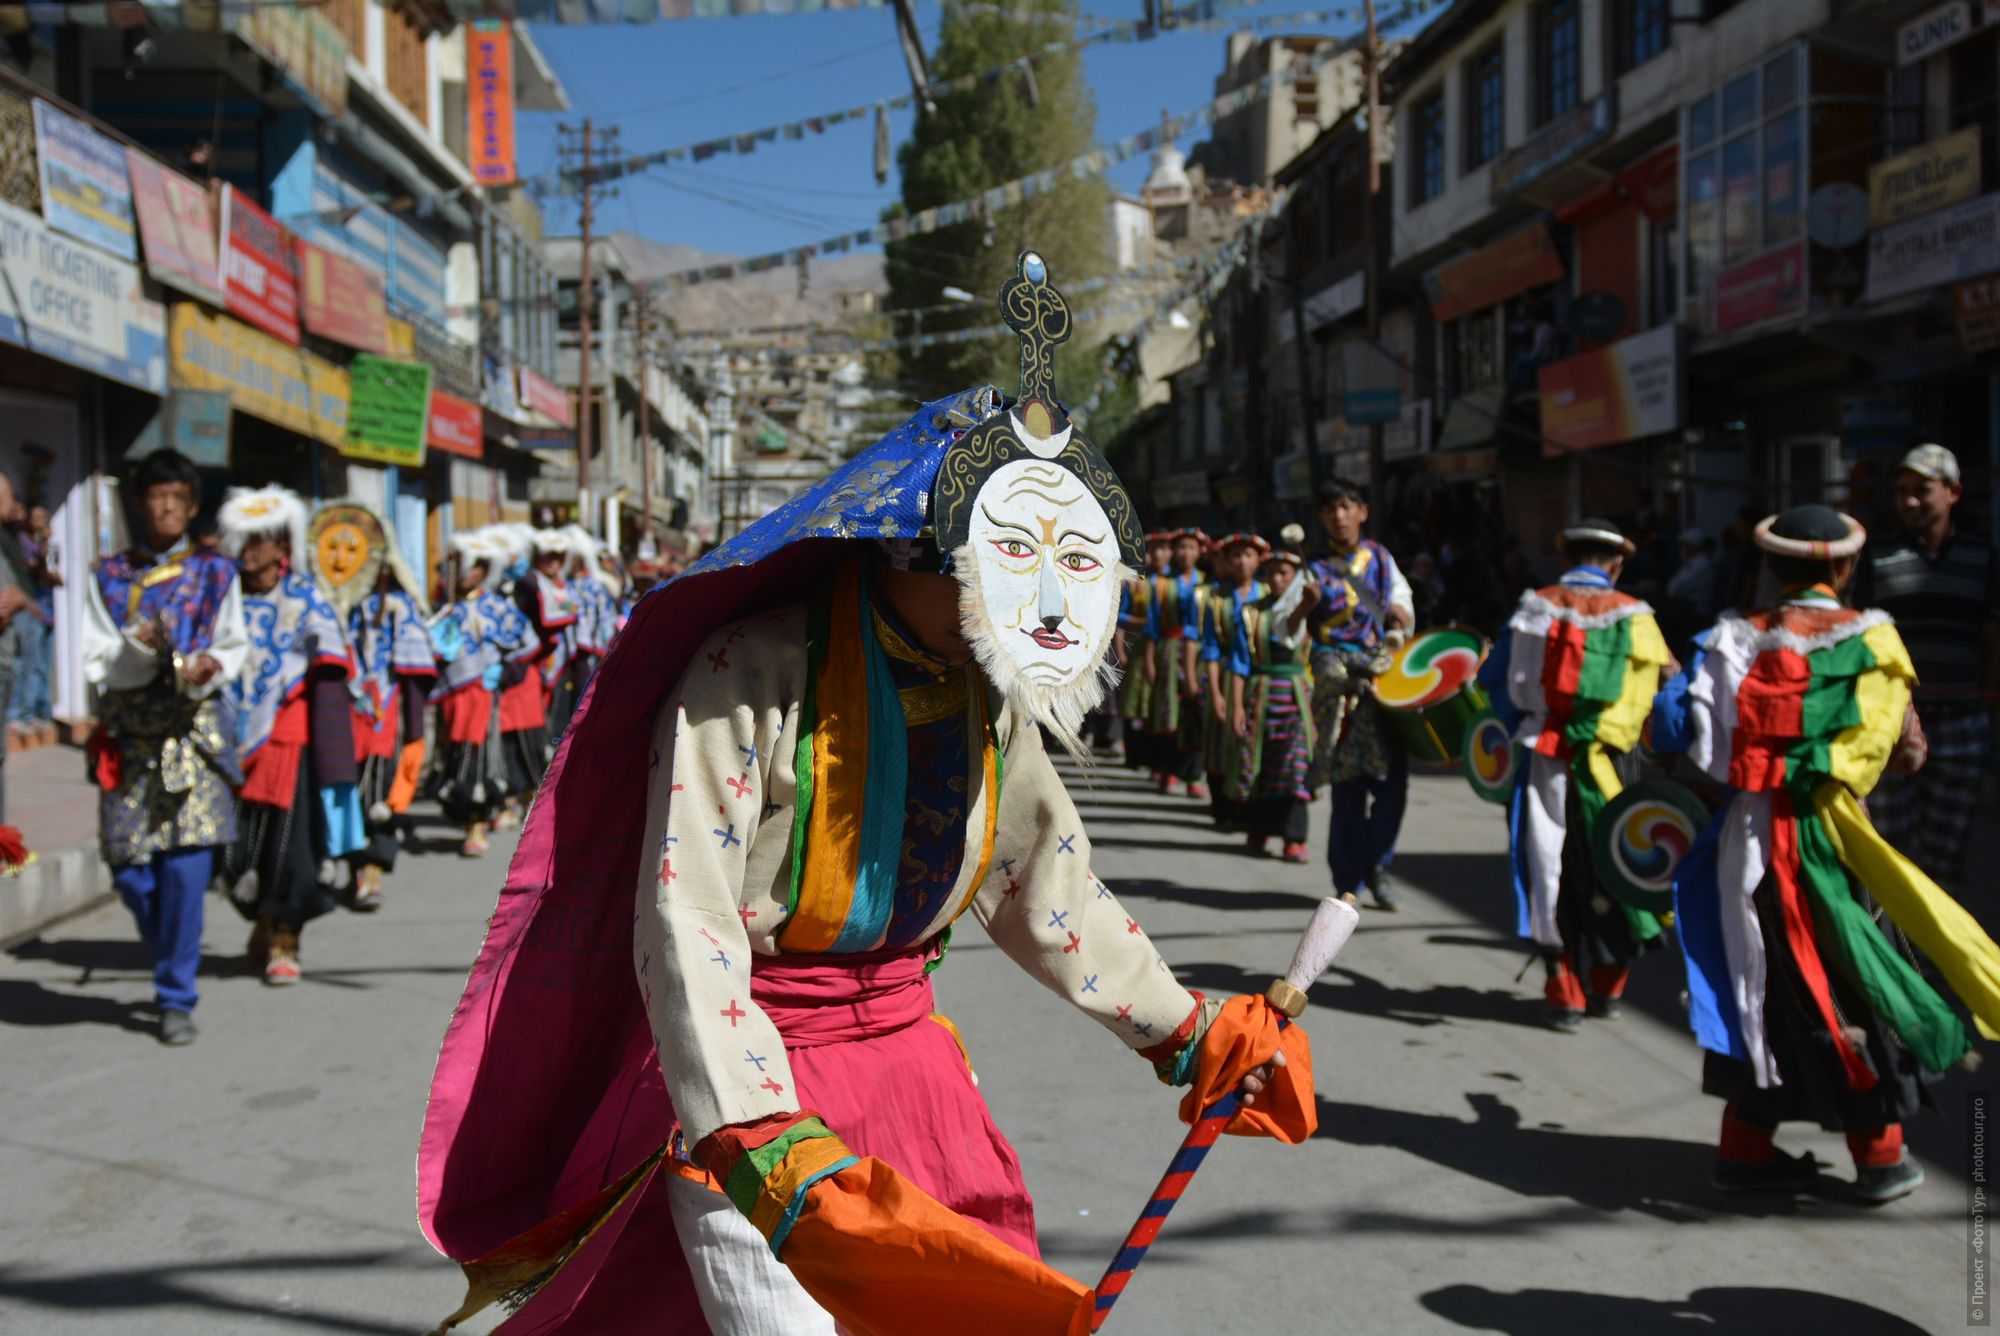 Парад Масок на фестивале в Ладакхе, тур по Ладакху, сентябрь 2017 года.